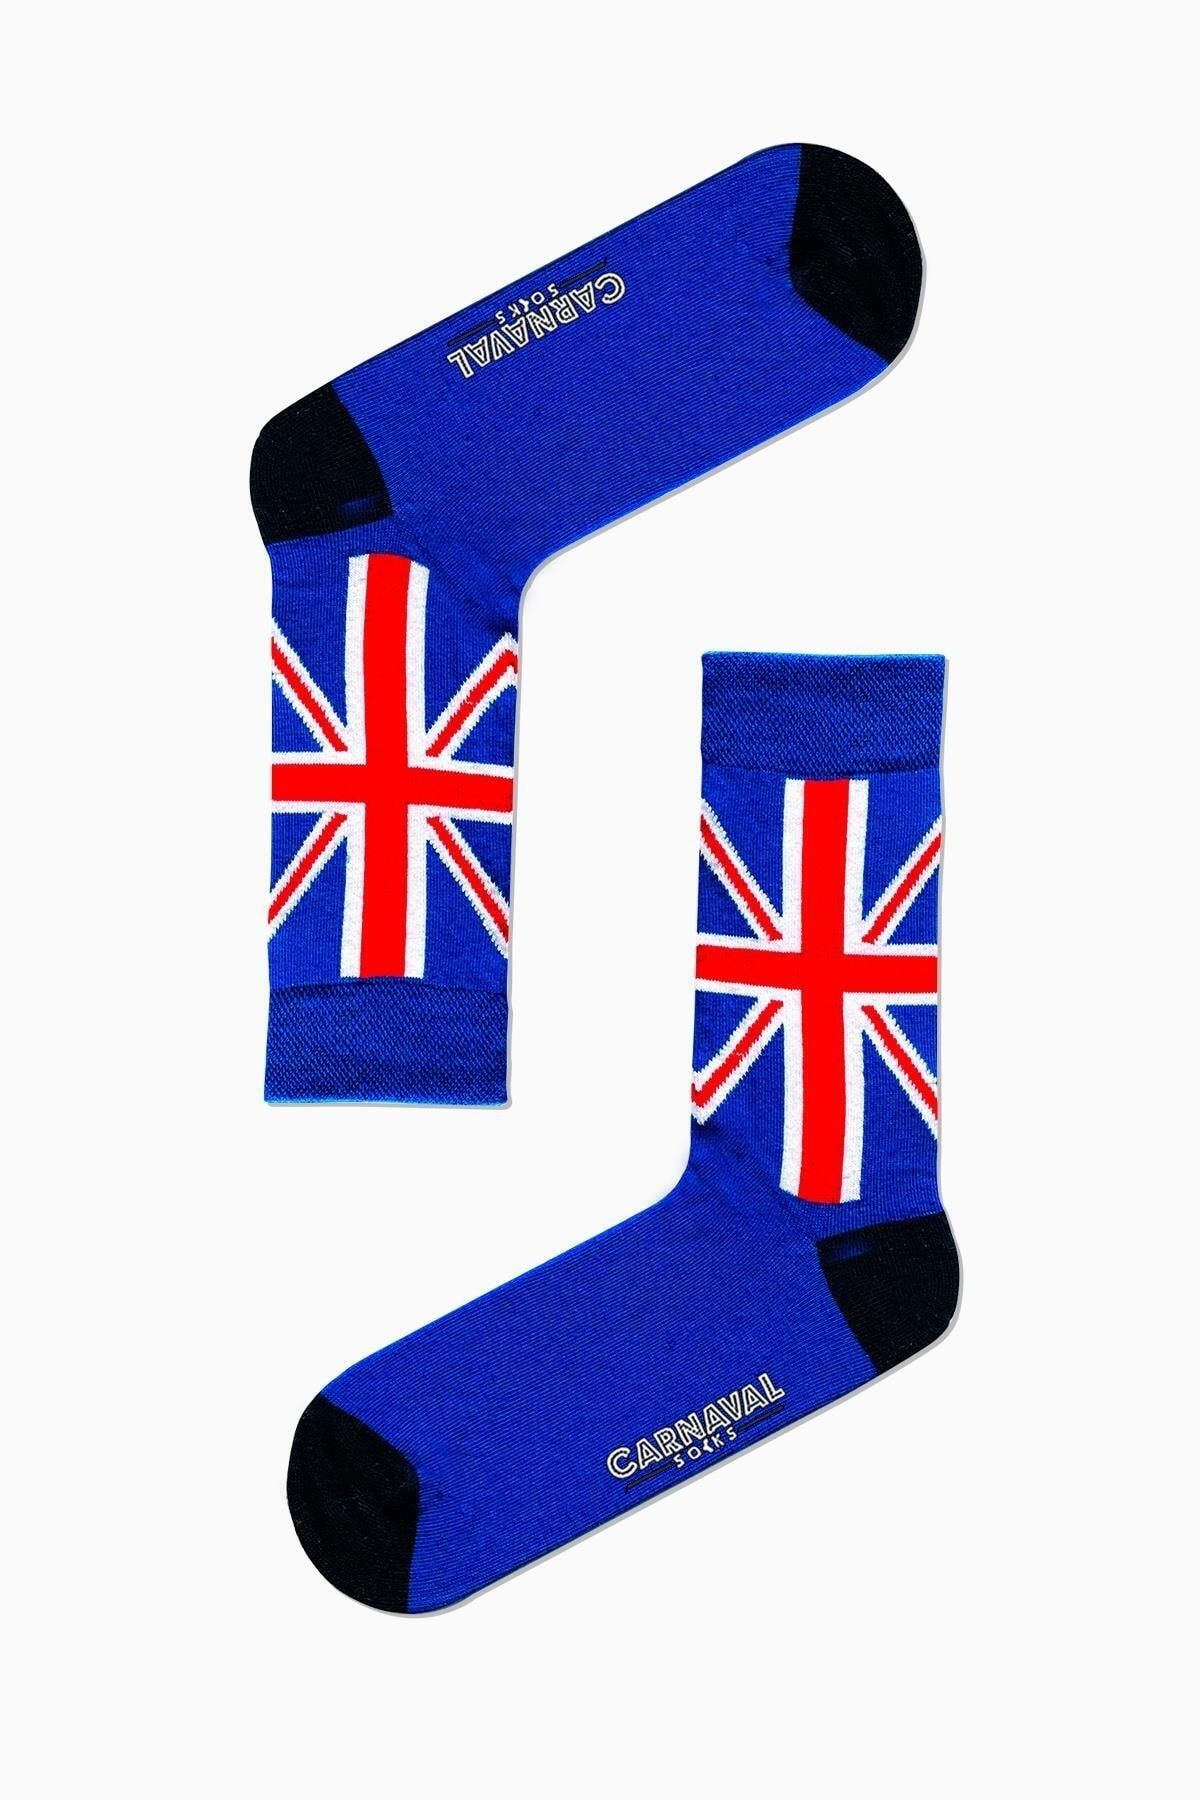 CARNAVAL SOCKS Ingiltere Bayrak Desenli Renkli Çorap